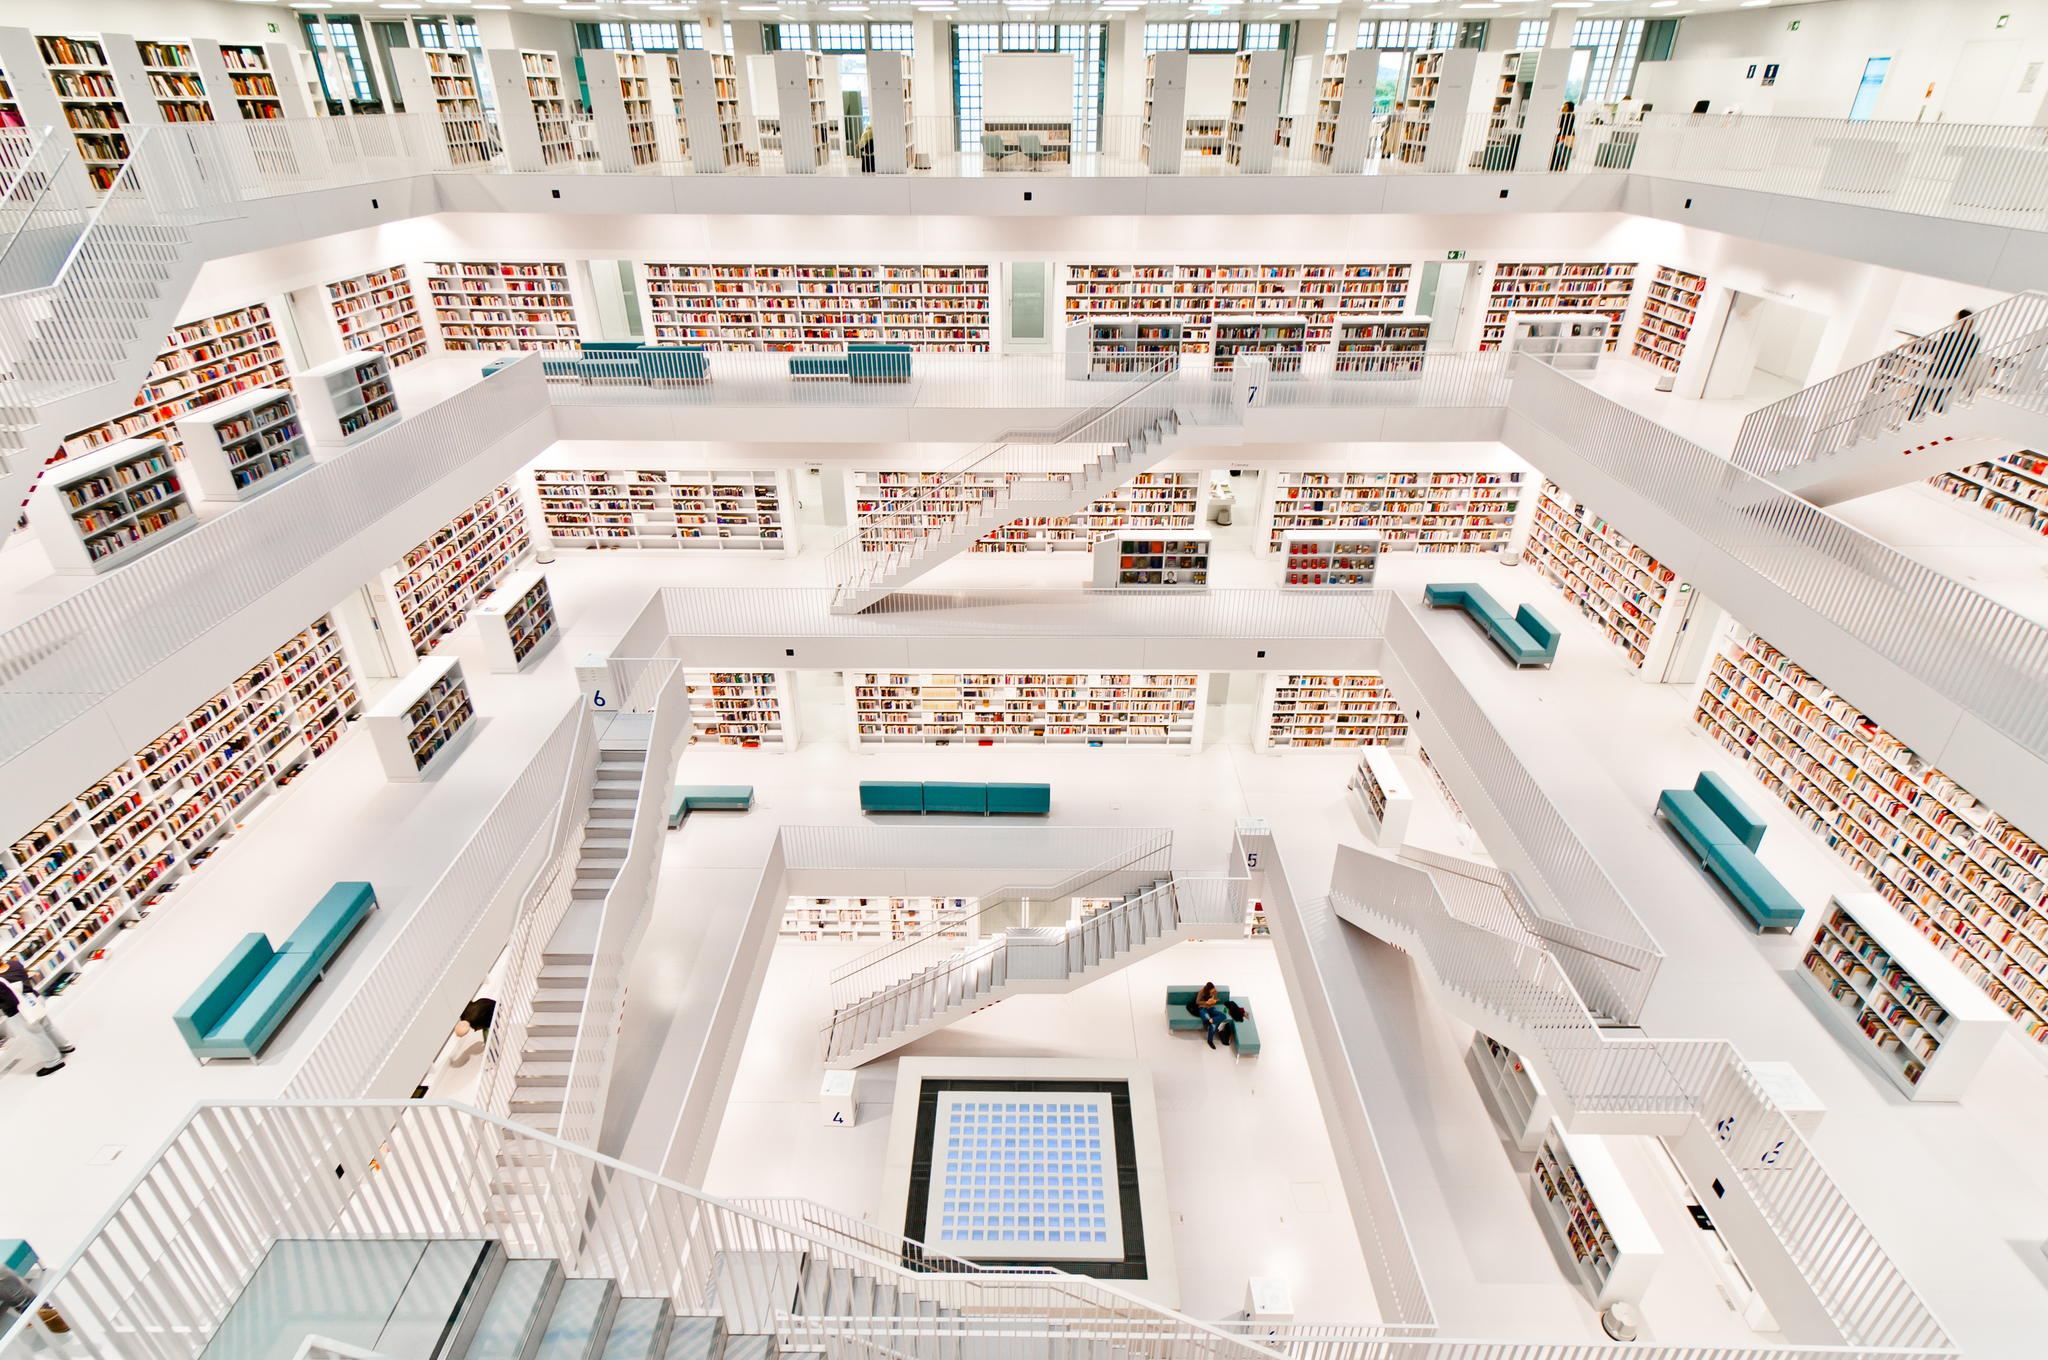 public library stuttgart in Germany